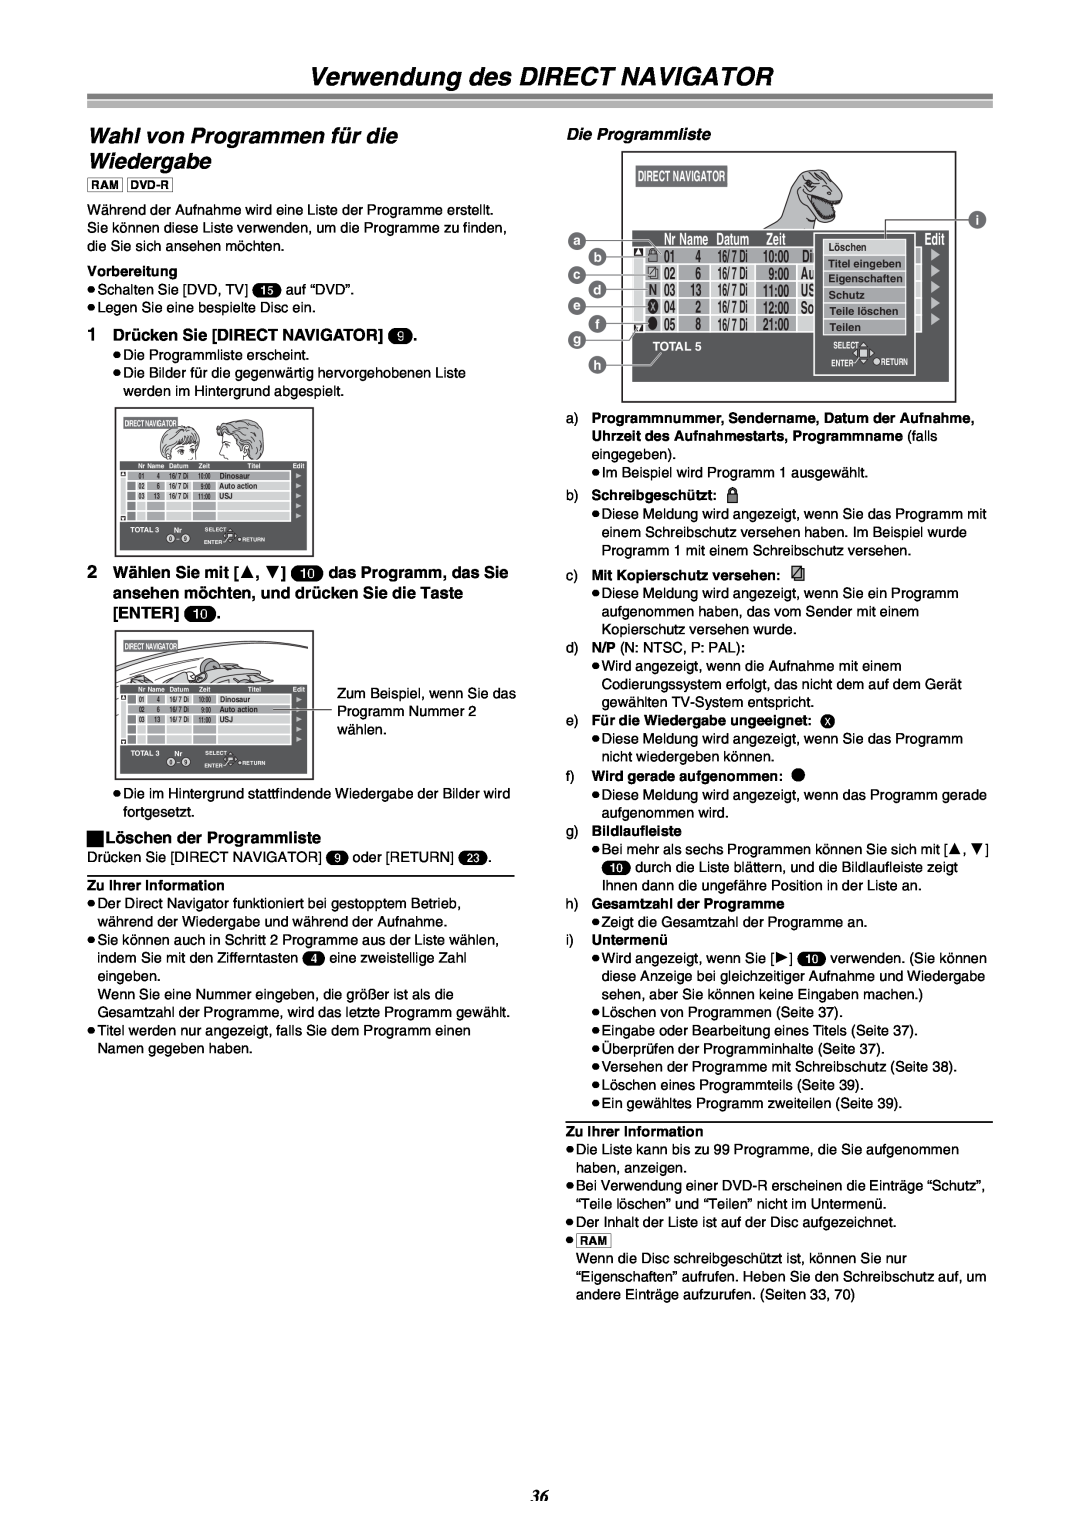 Panasonic DMR-E30 Verwendung des DIRECT NAVIGATOR, Wahl von Programmen für die Wiedergabe, Dinosaur, Zeit, Directnavigator 